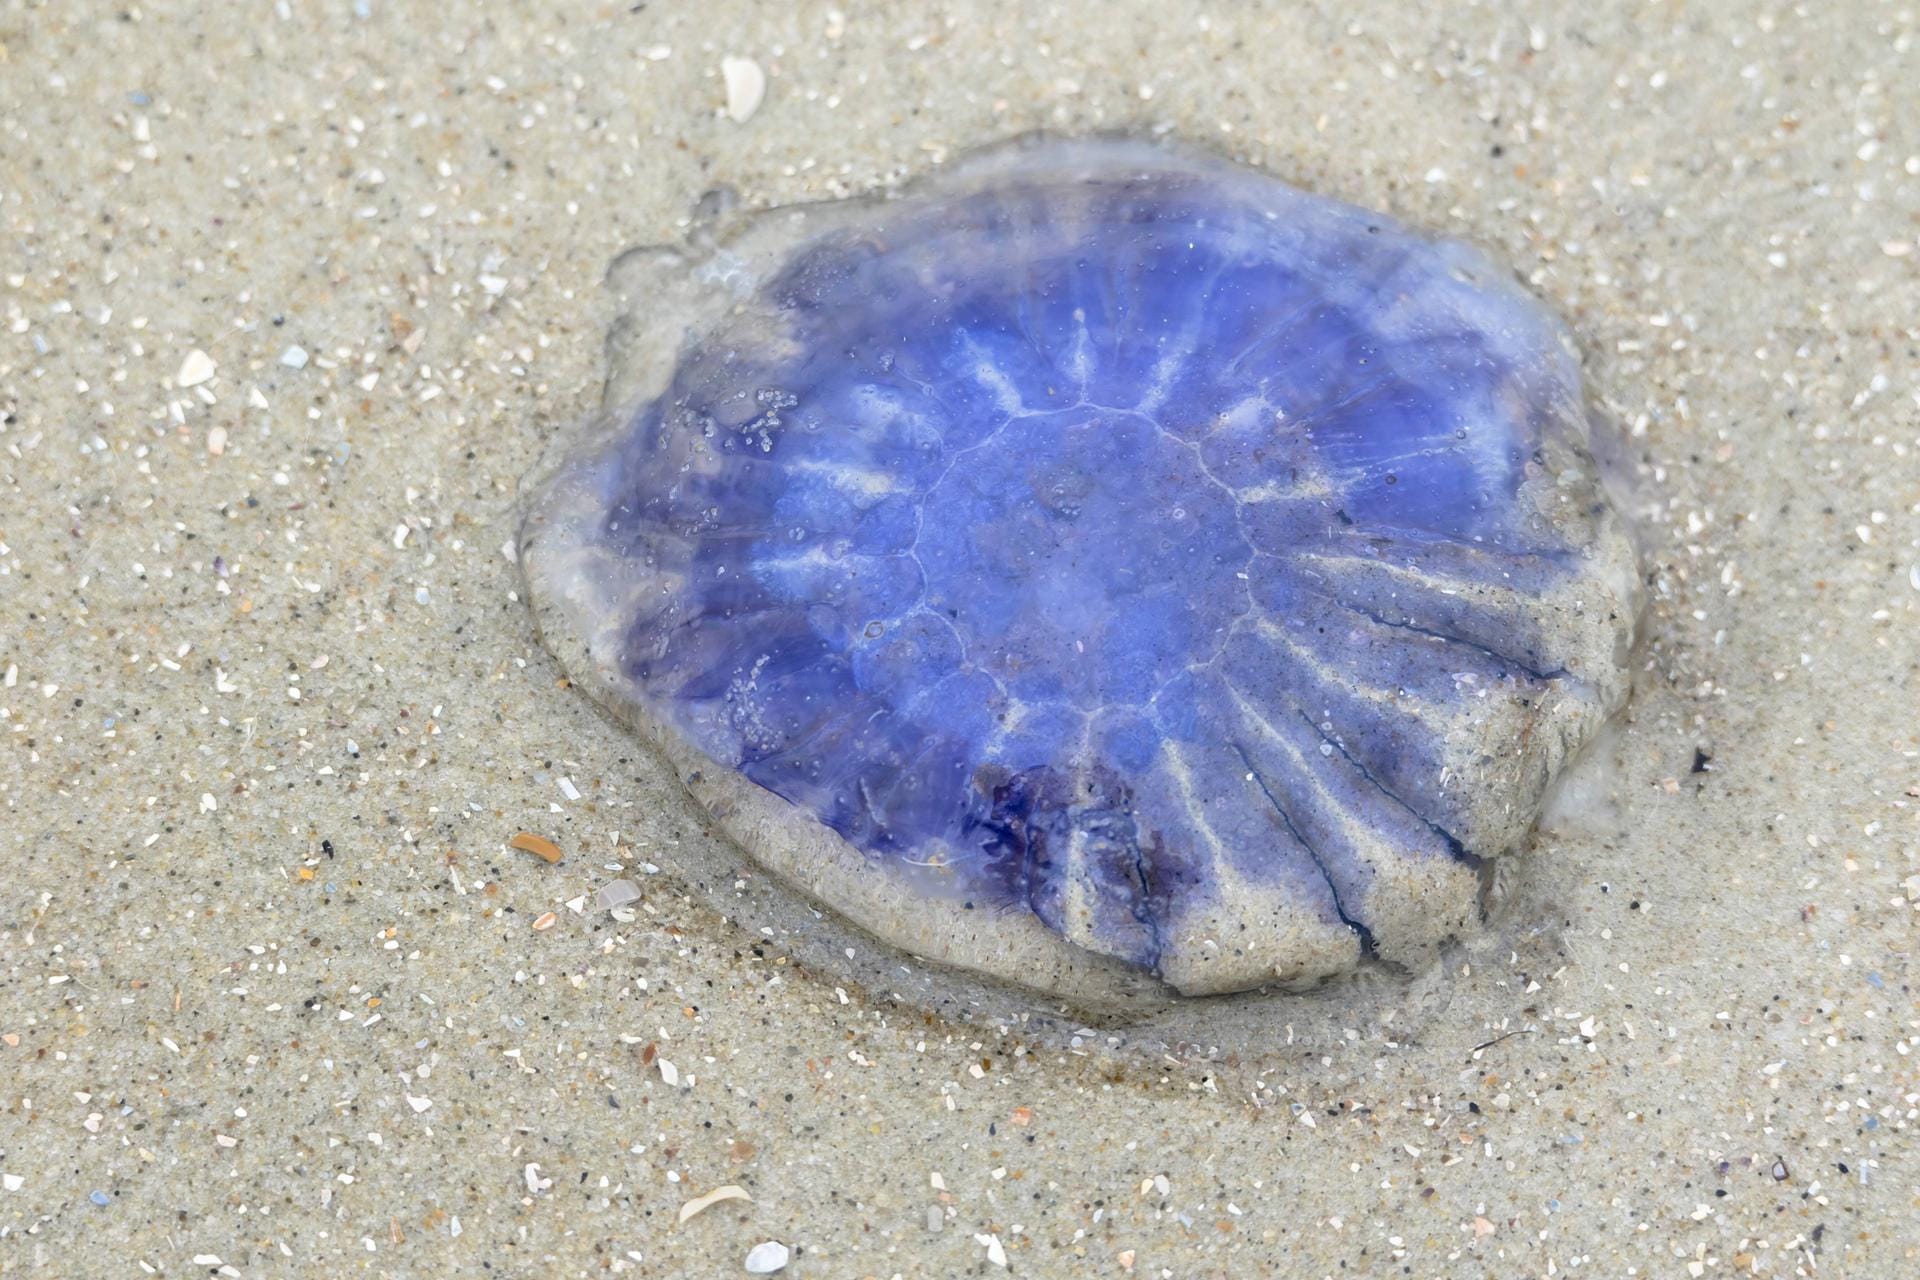 Blaue Nesselqualle (Cyanea lamarcki): Auch sie ist unter anderem in Nord- und Ostsee zu finden.